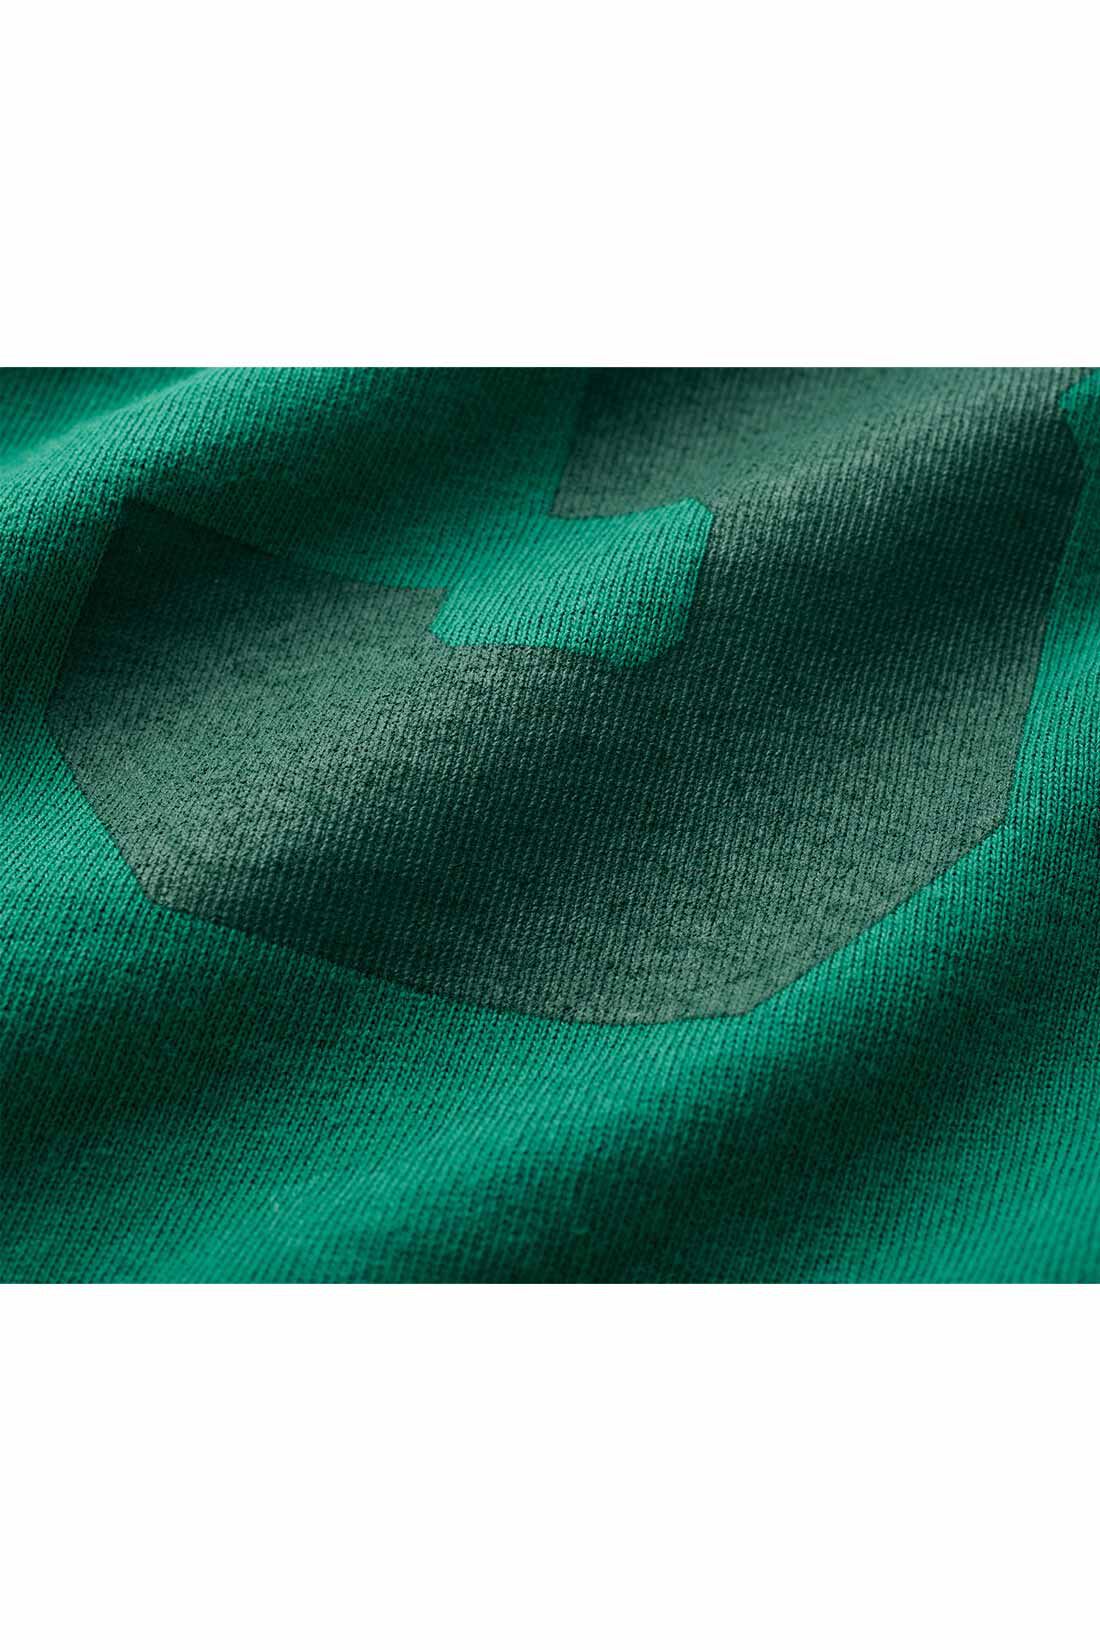 THREE FIFTY STANDARD|THREE FIFTY STANDARD フットボールTシャツ〈グリーン〉|ベースと同色で濃淡をつけてユーズド風にプリントしたナンバリングロゴが、独特の抜け感を演出してくれます。